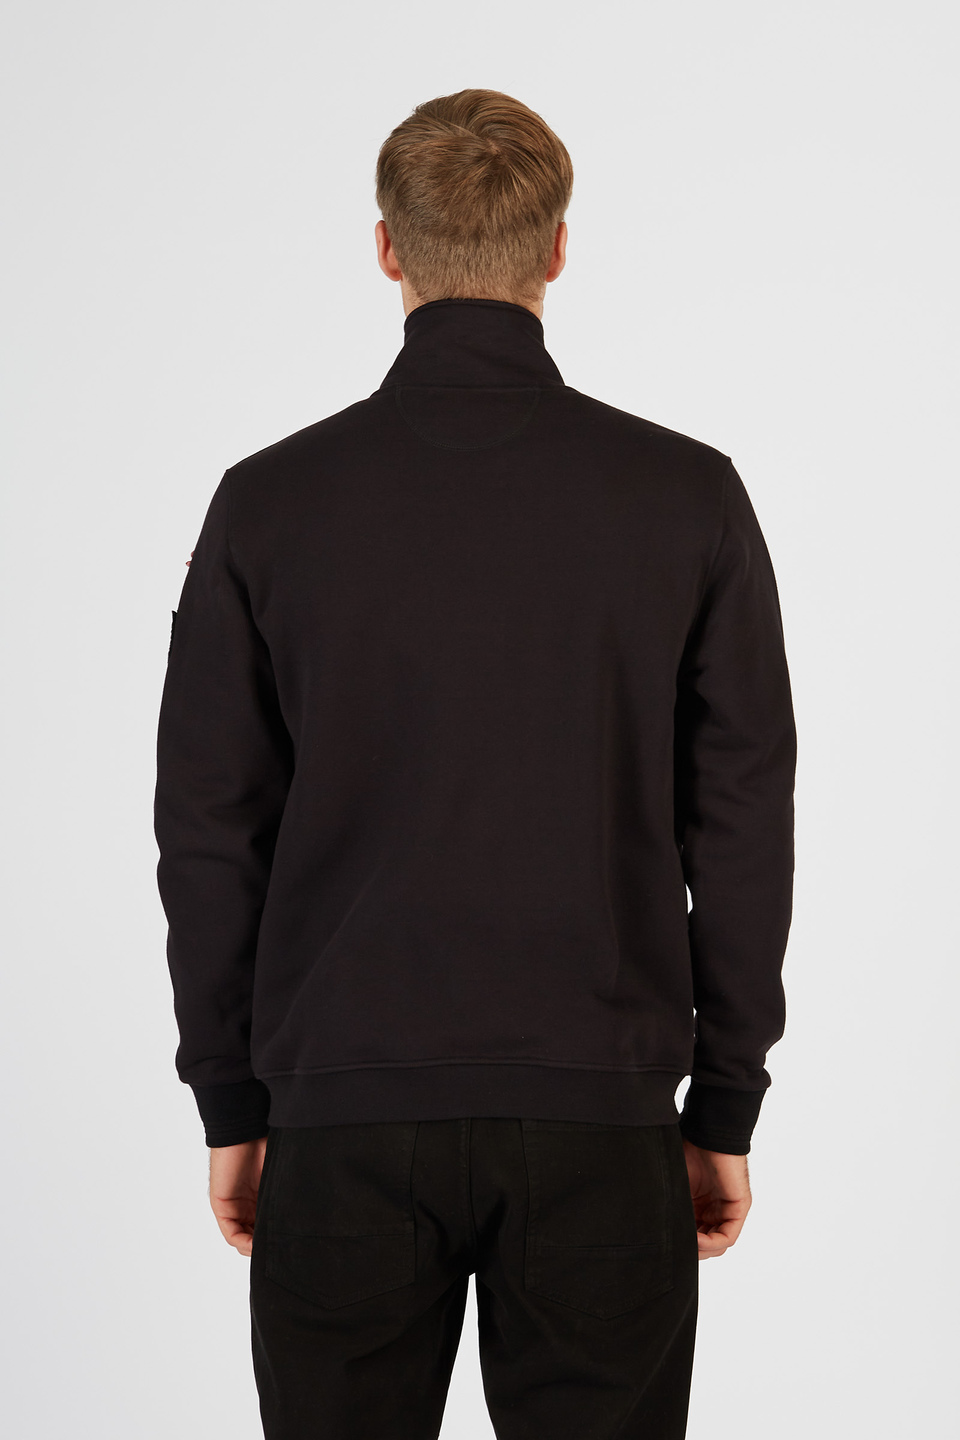 Herren-Sweatshirt aus 100% Baumwolle | La Martina - Official Online Shop